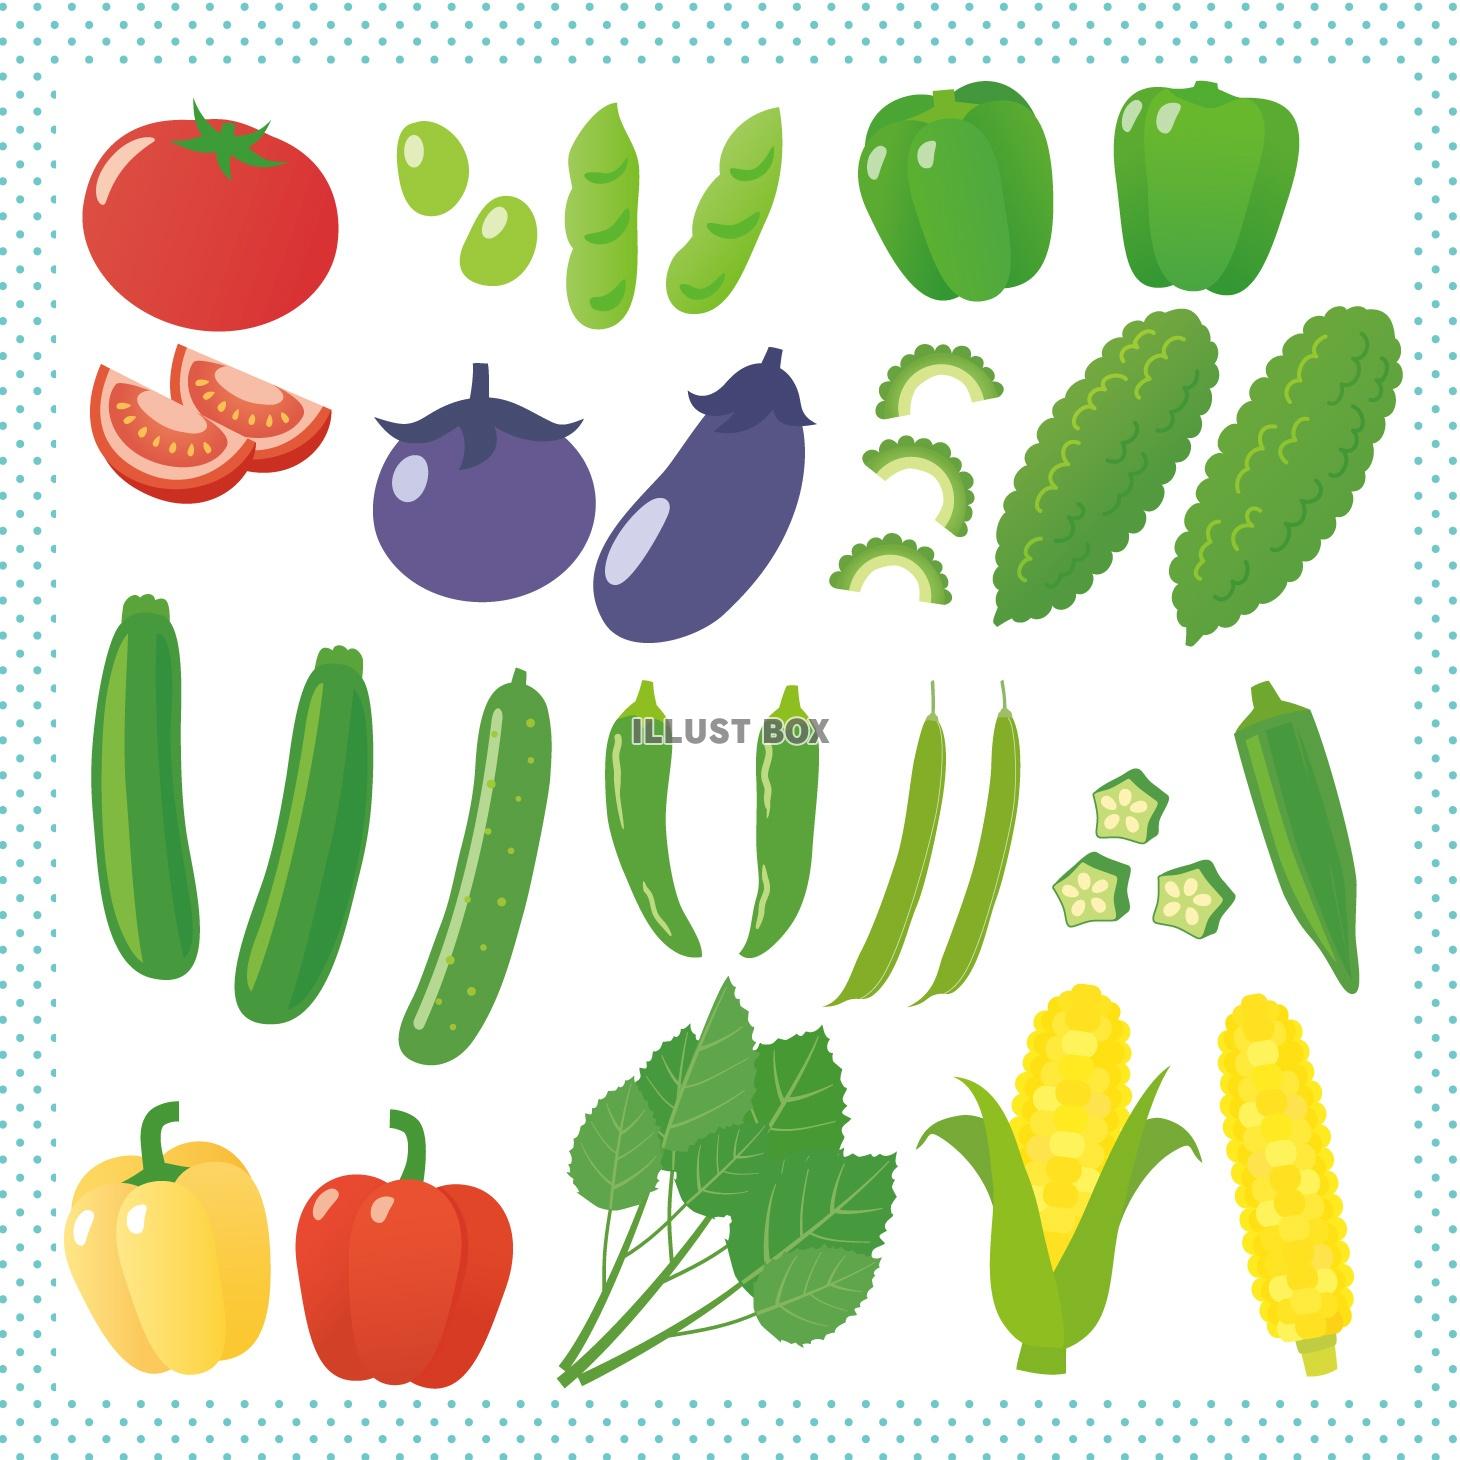 印刷可能無料 夏野菜 イラスト 無料 無料イラスト素材 かわいいフリー素材 素材のプ